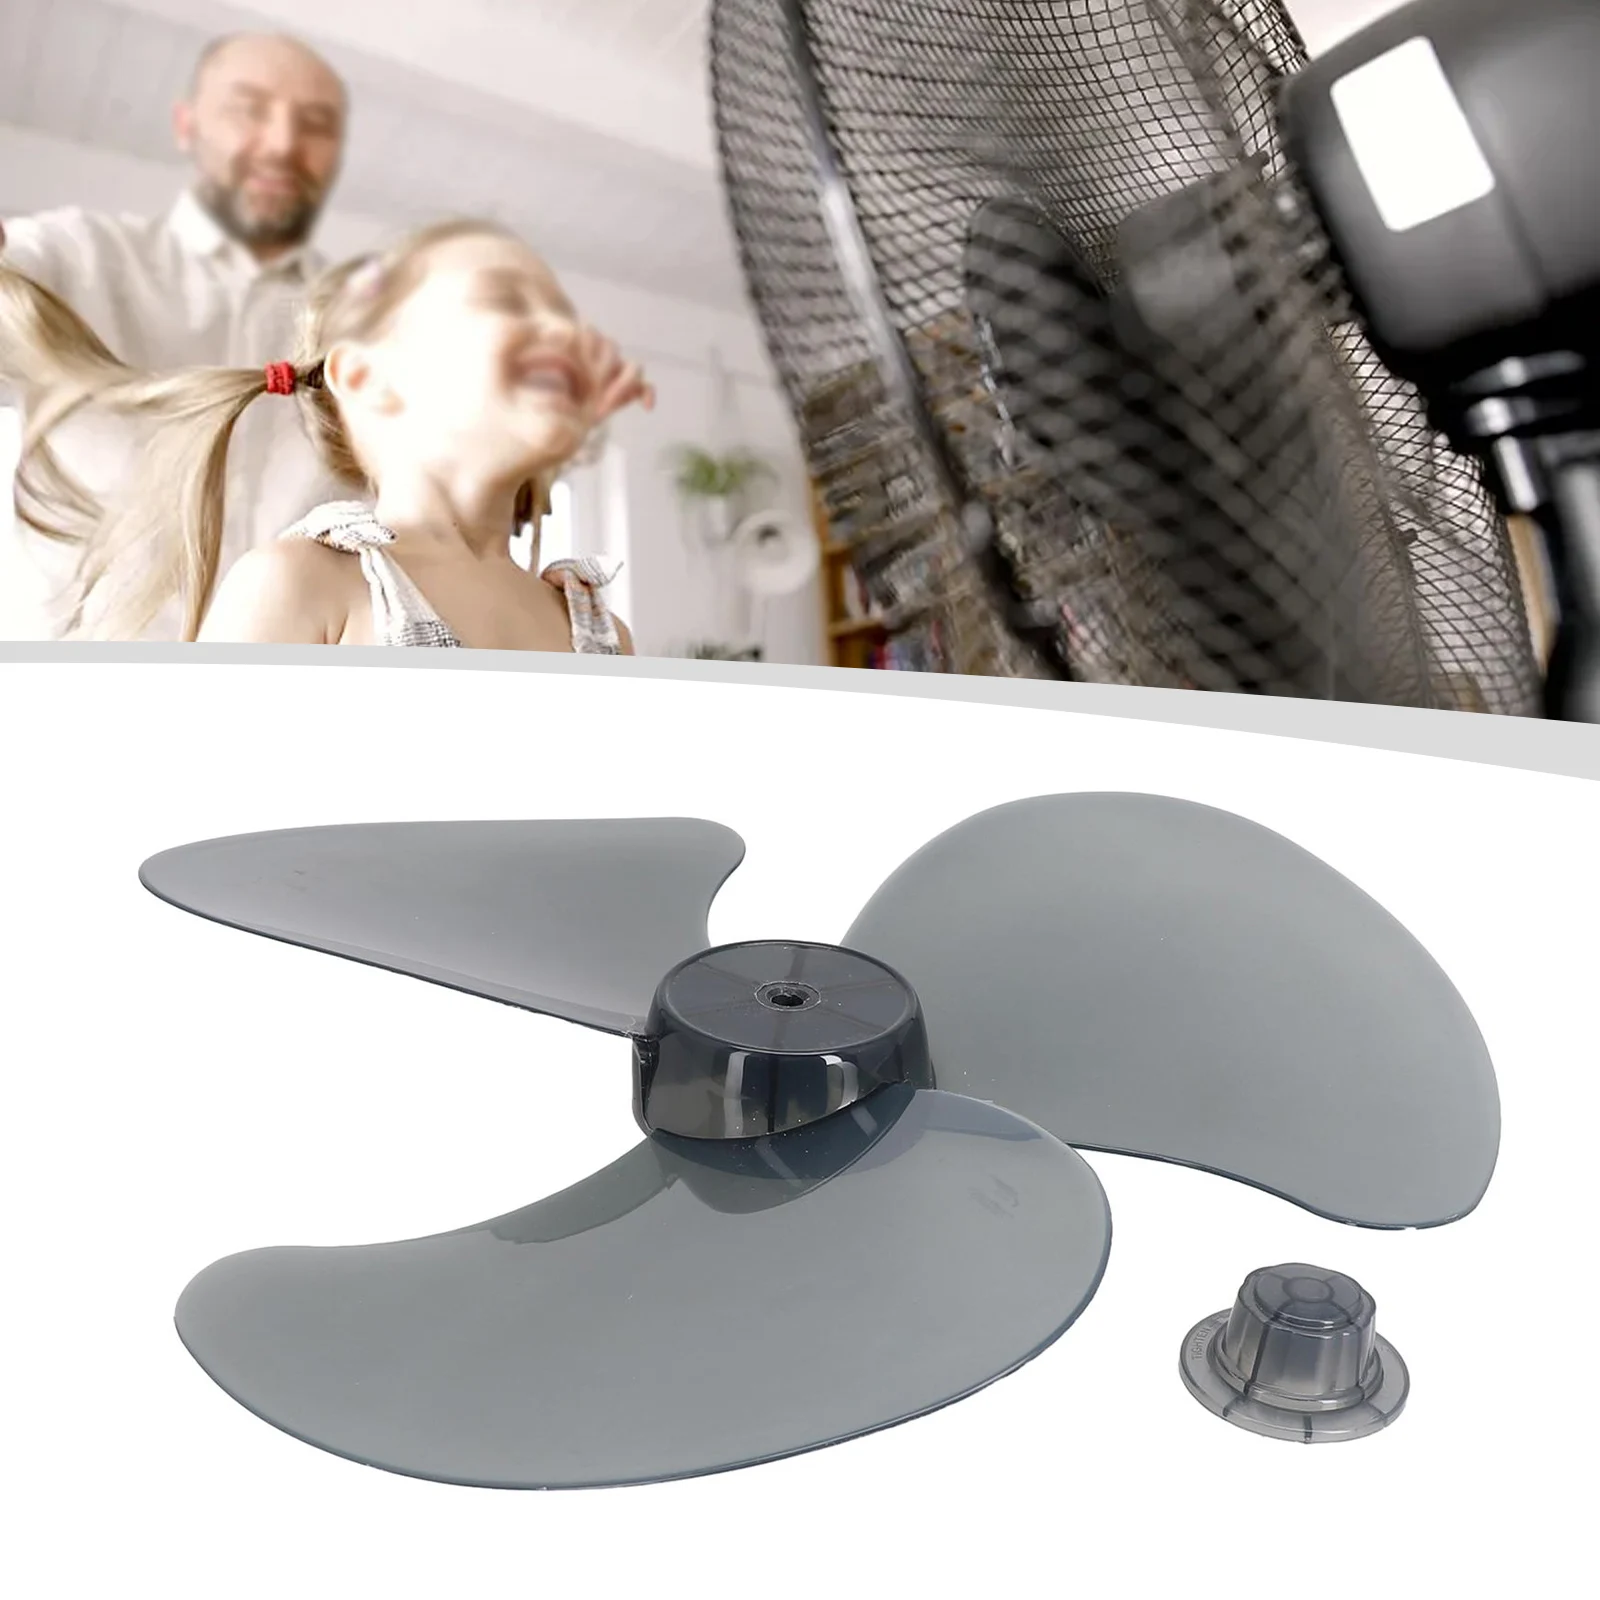 

16Inch Fan Blade 3 Leaves For Standing Pedestal Floor Wall / Table =-=Fanner Household Fan Blade Electric Fan Accessories